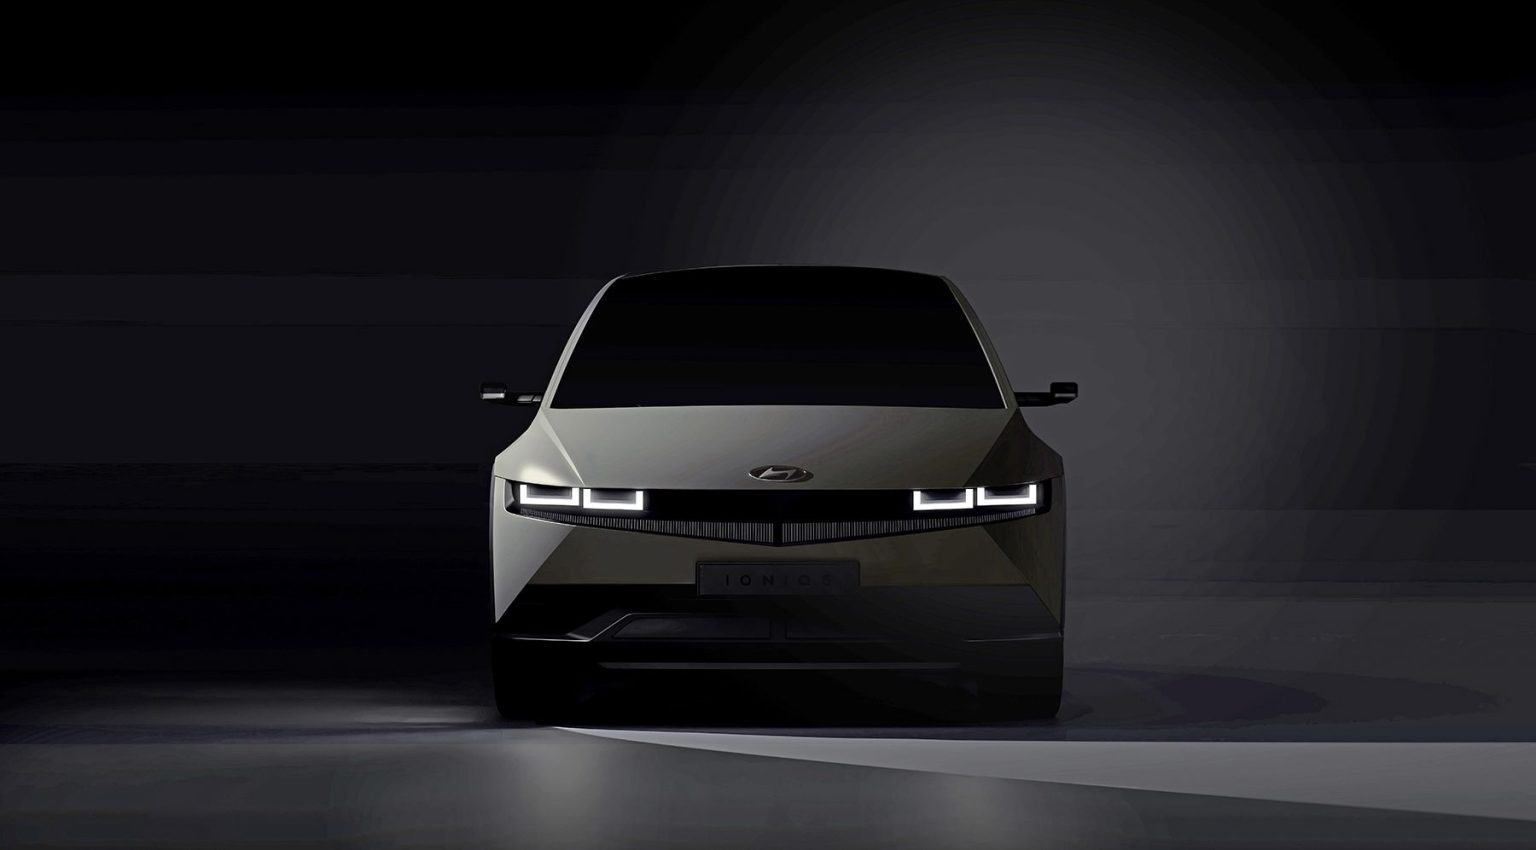 "عملاقة السيارات" هيونداي 2022 الجديدة أقوي سيارة كهربائية بمواصفات تفوق الوصف